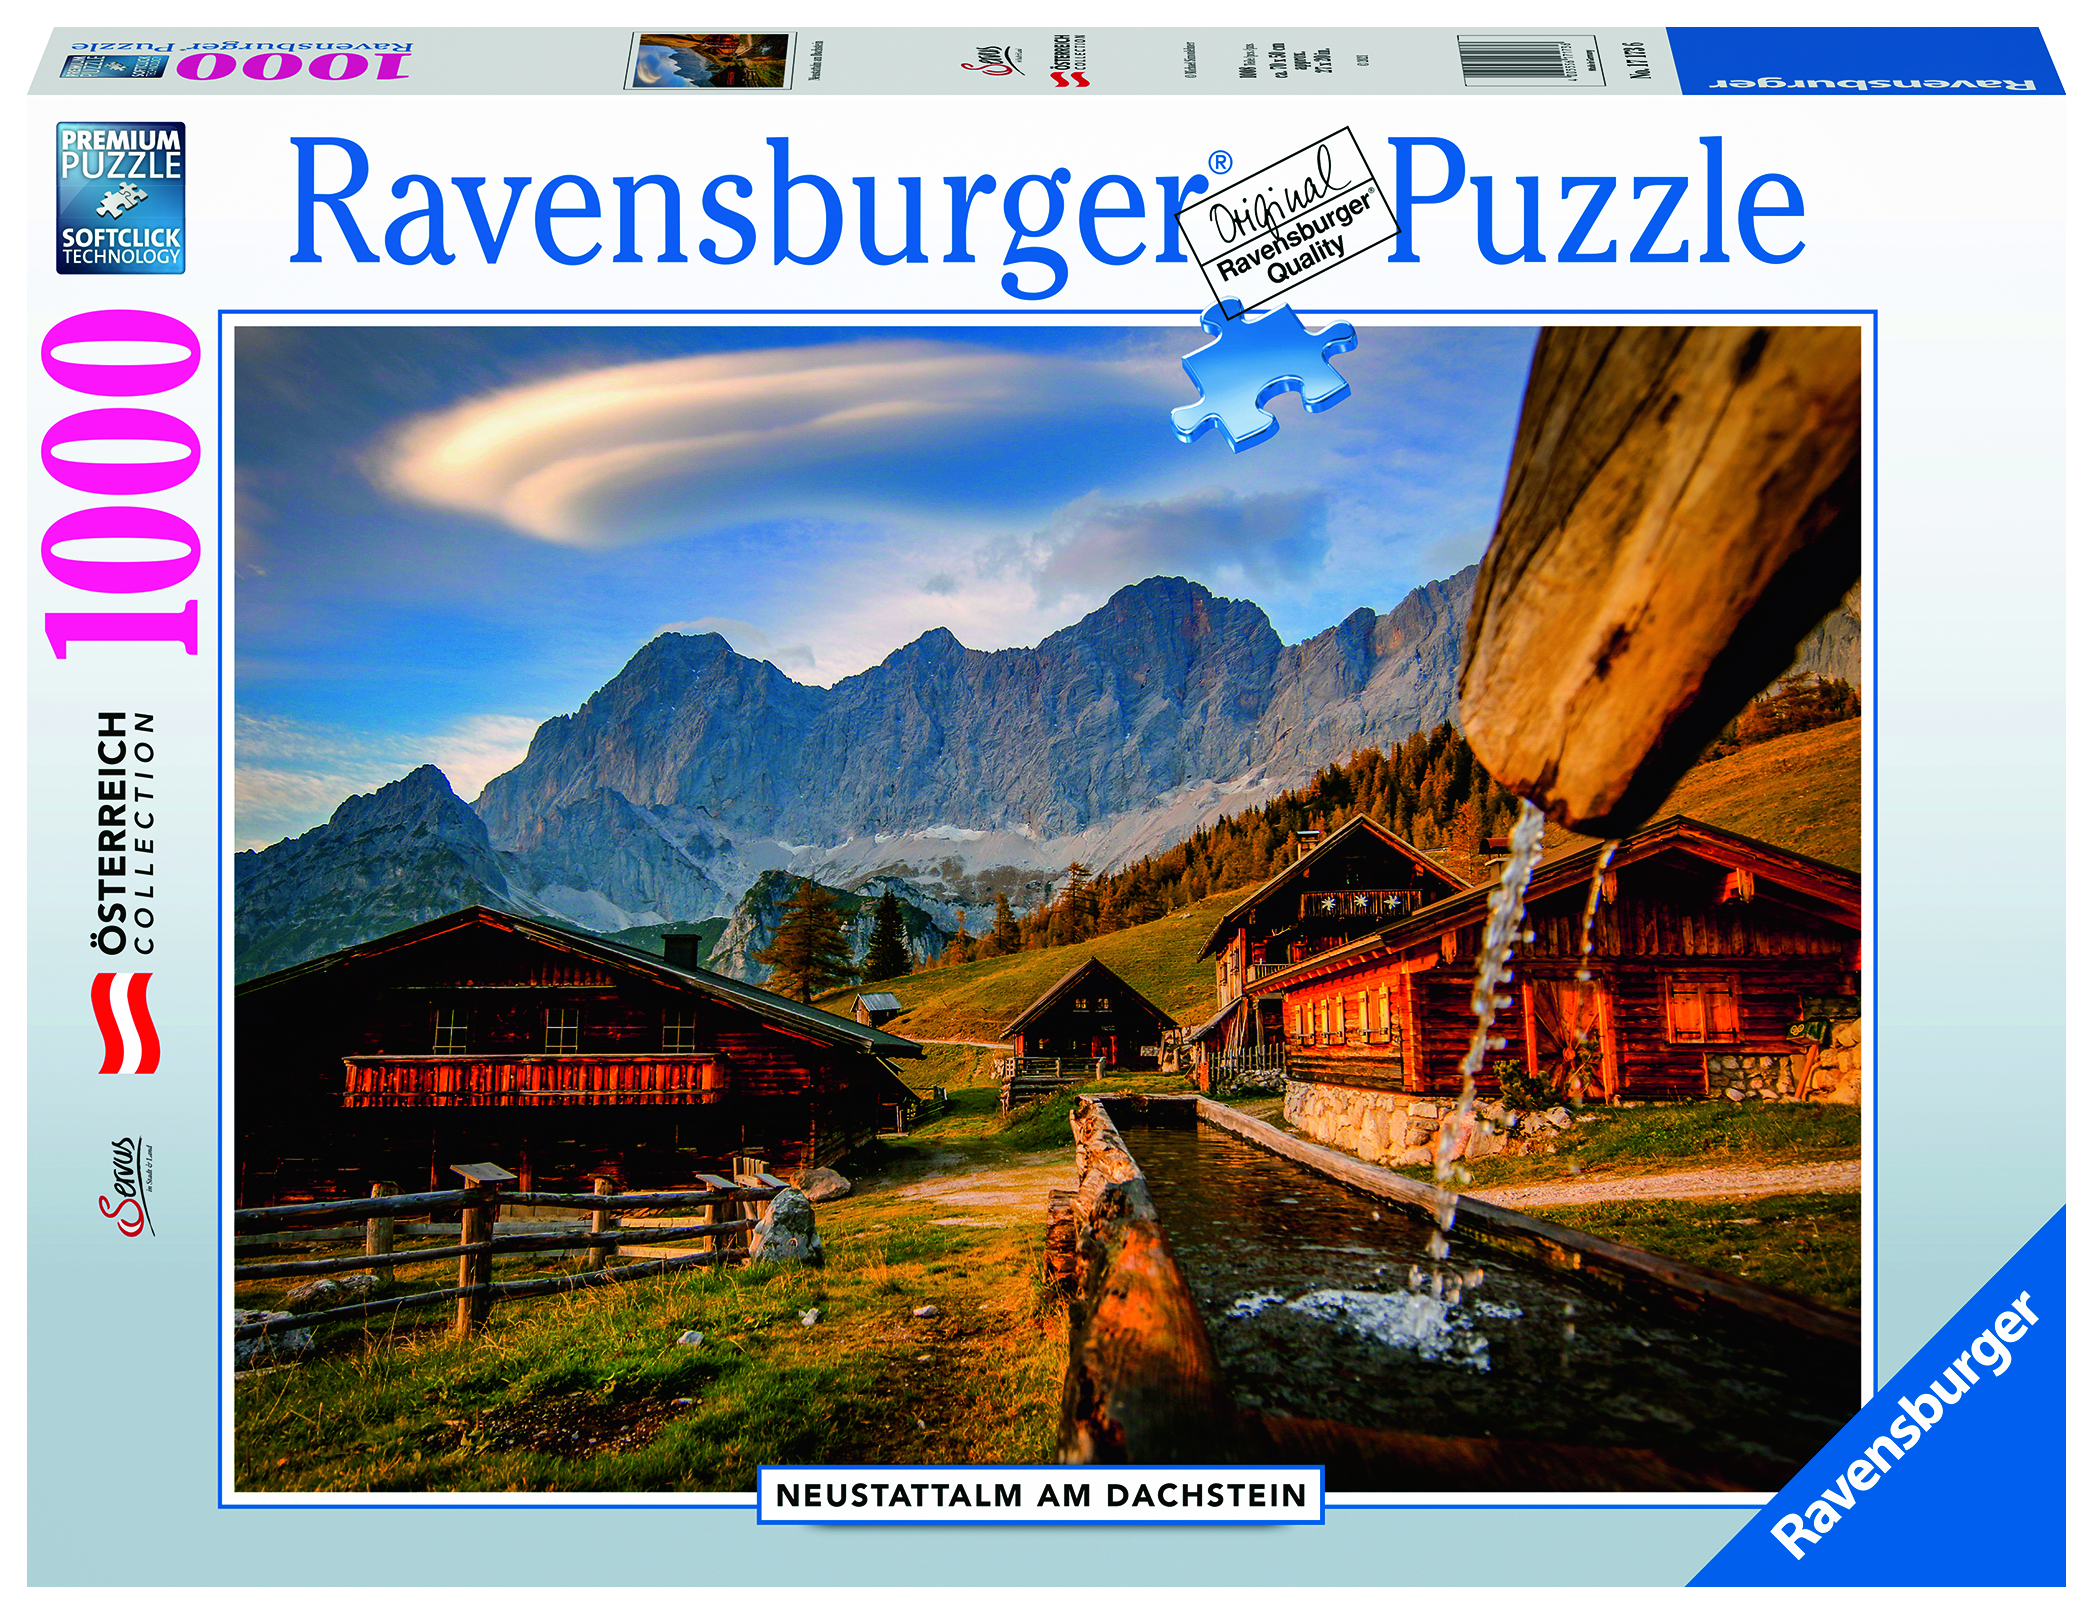 RAVENSBURGER 17173 Neustattalm am Dachstein Mehrfarbig Puzzle